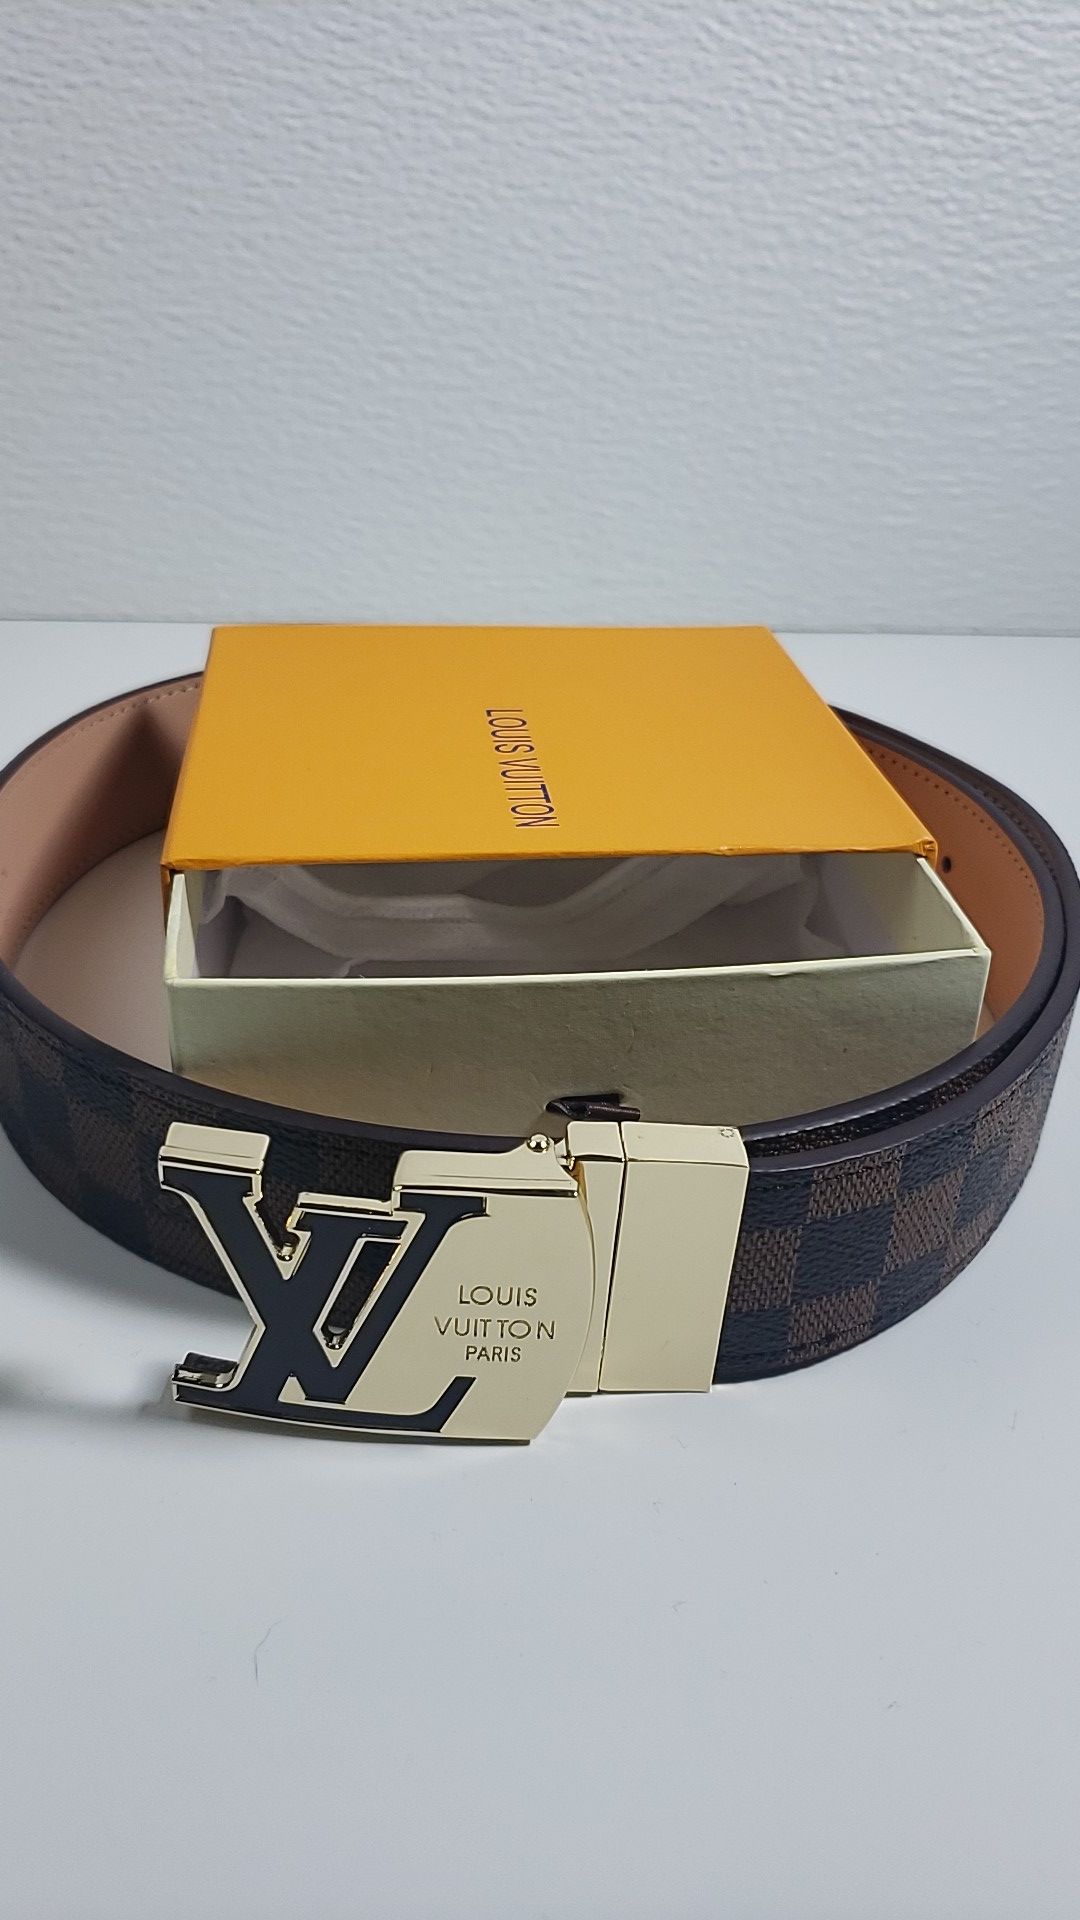 Louis Vuitton Men's belt Size 110cm 44 inch